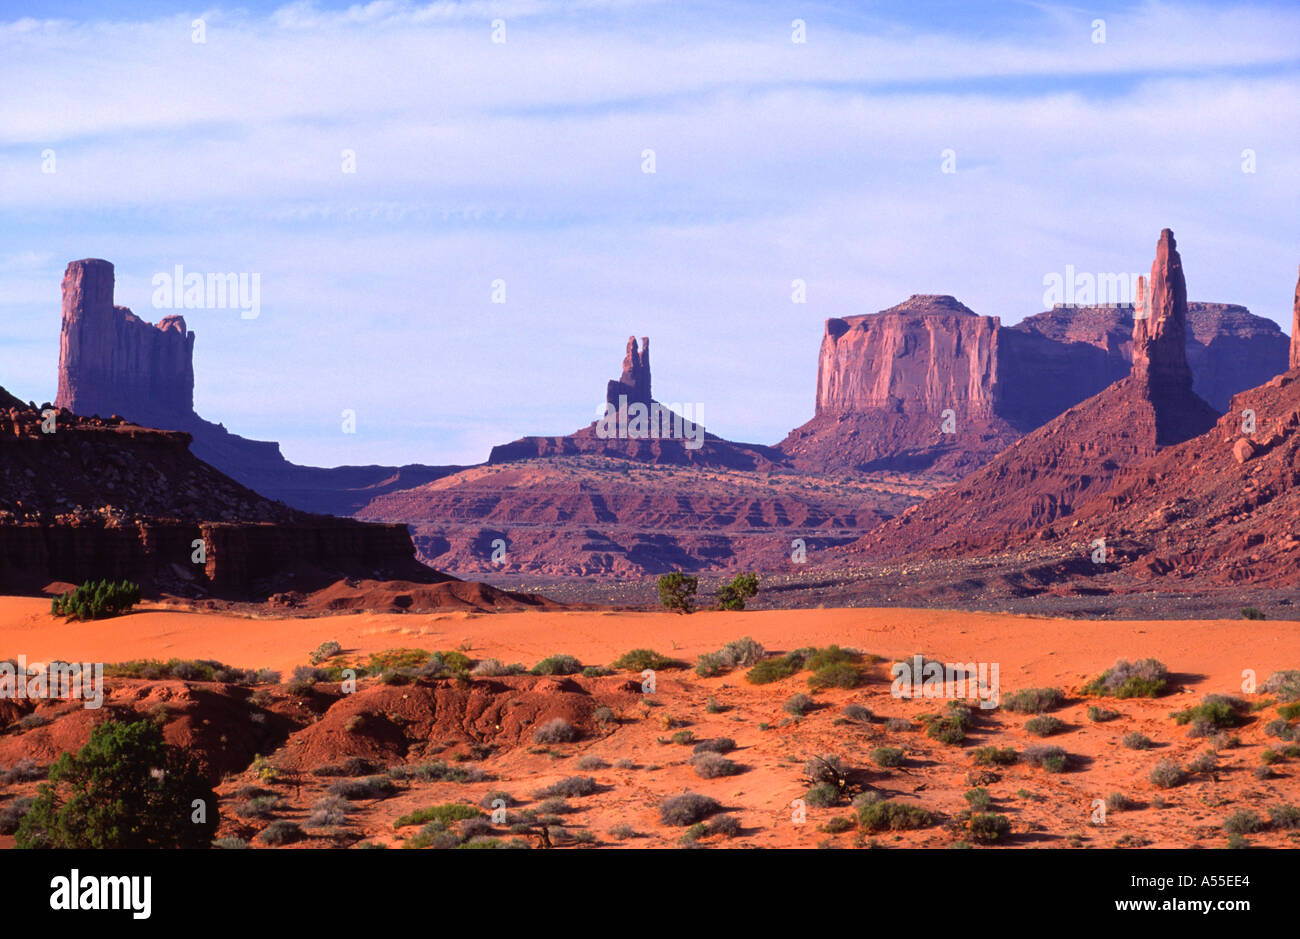 Monument Valley Navajo Tribal Park Arizona USA Stock Photo